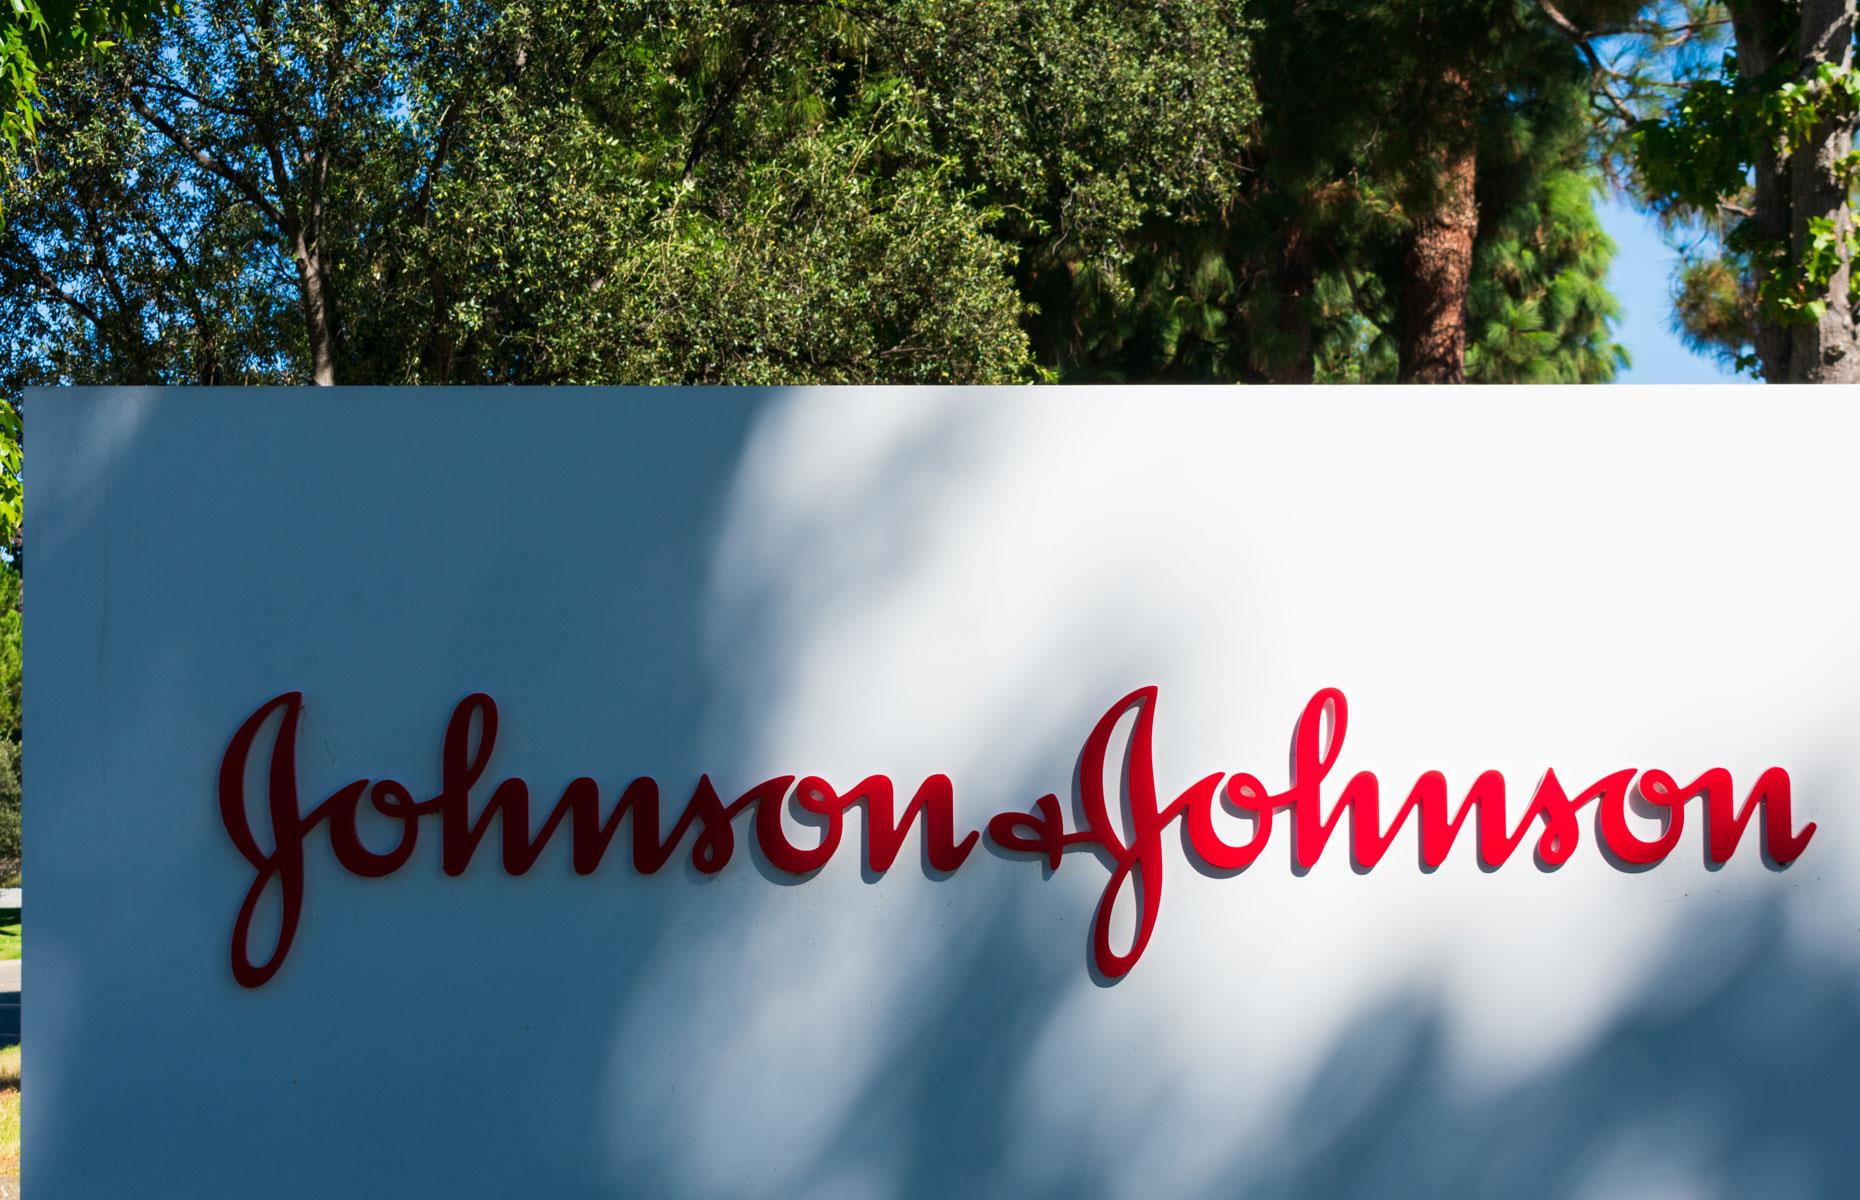 New Jersey: Johnson & Johnson, valued at $391.2 billion (£299.3bn)